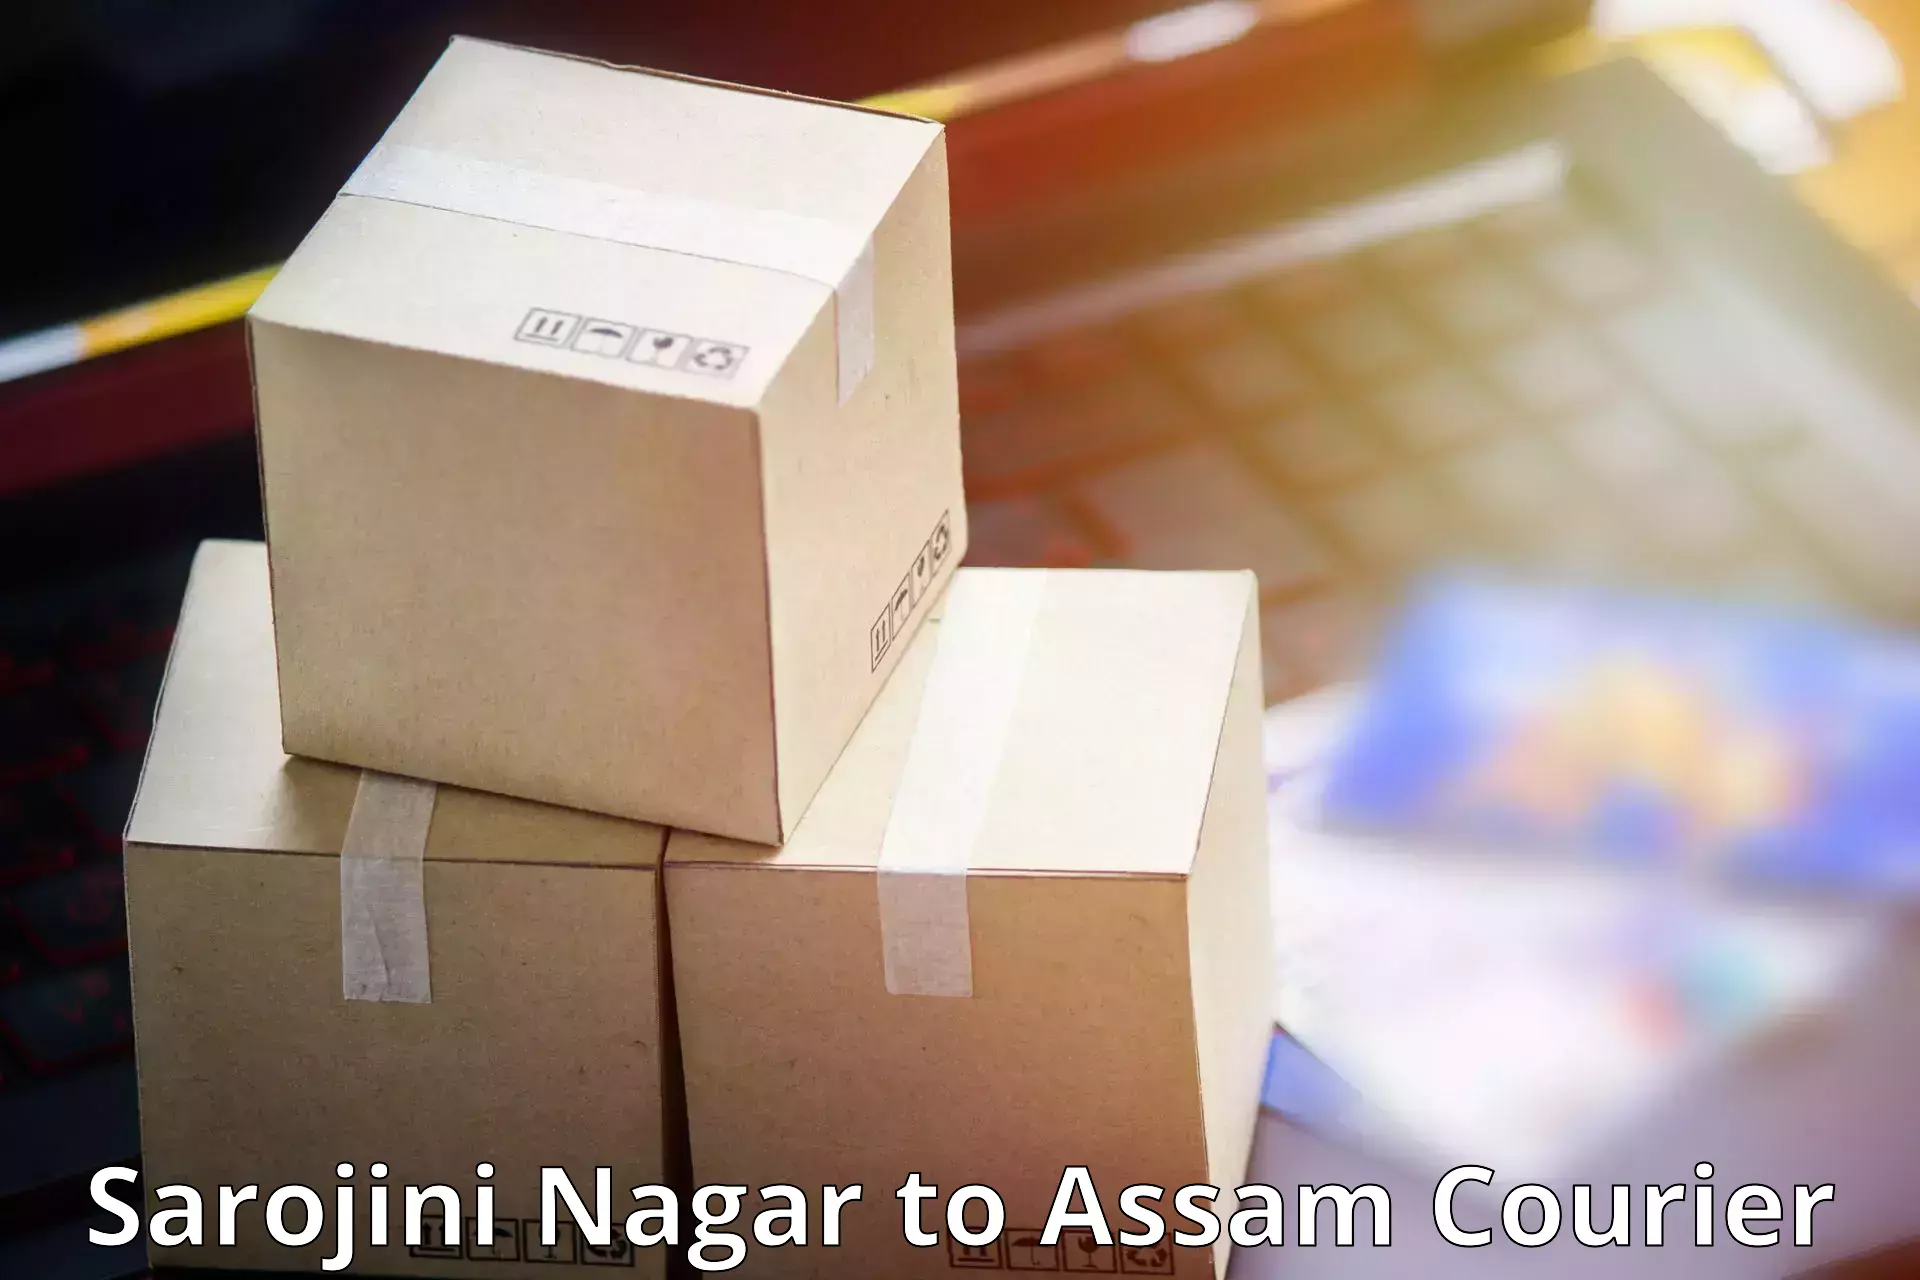 Sustainable courier practices Sarojini Nagar to Rangia